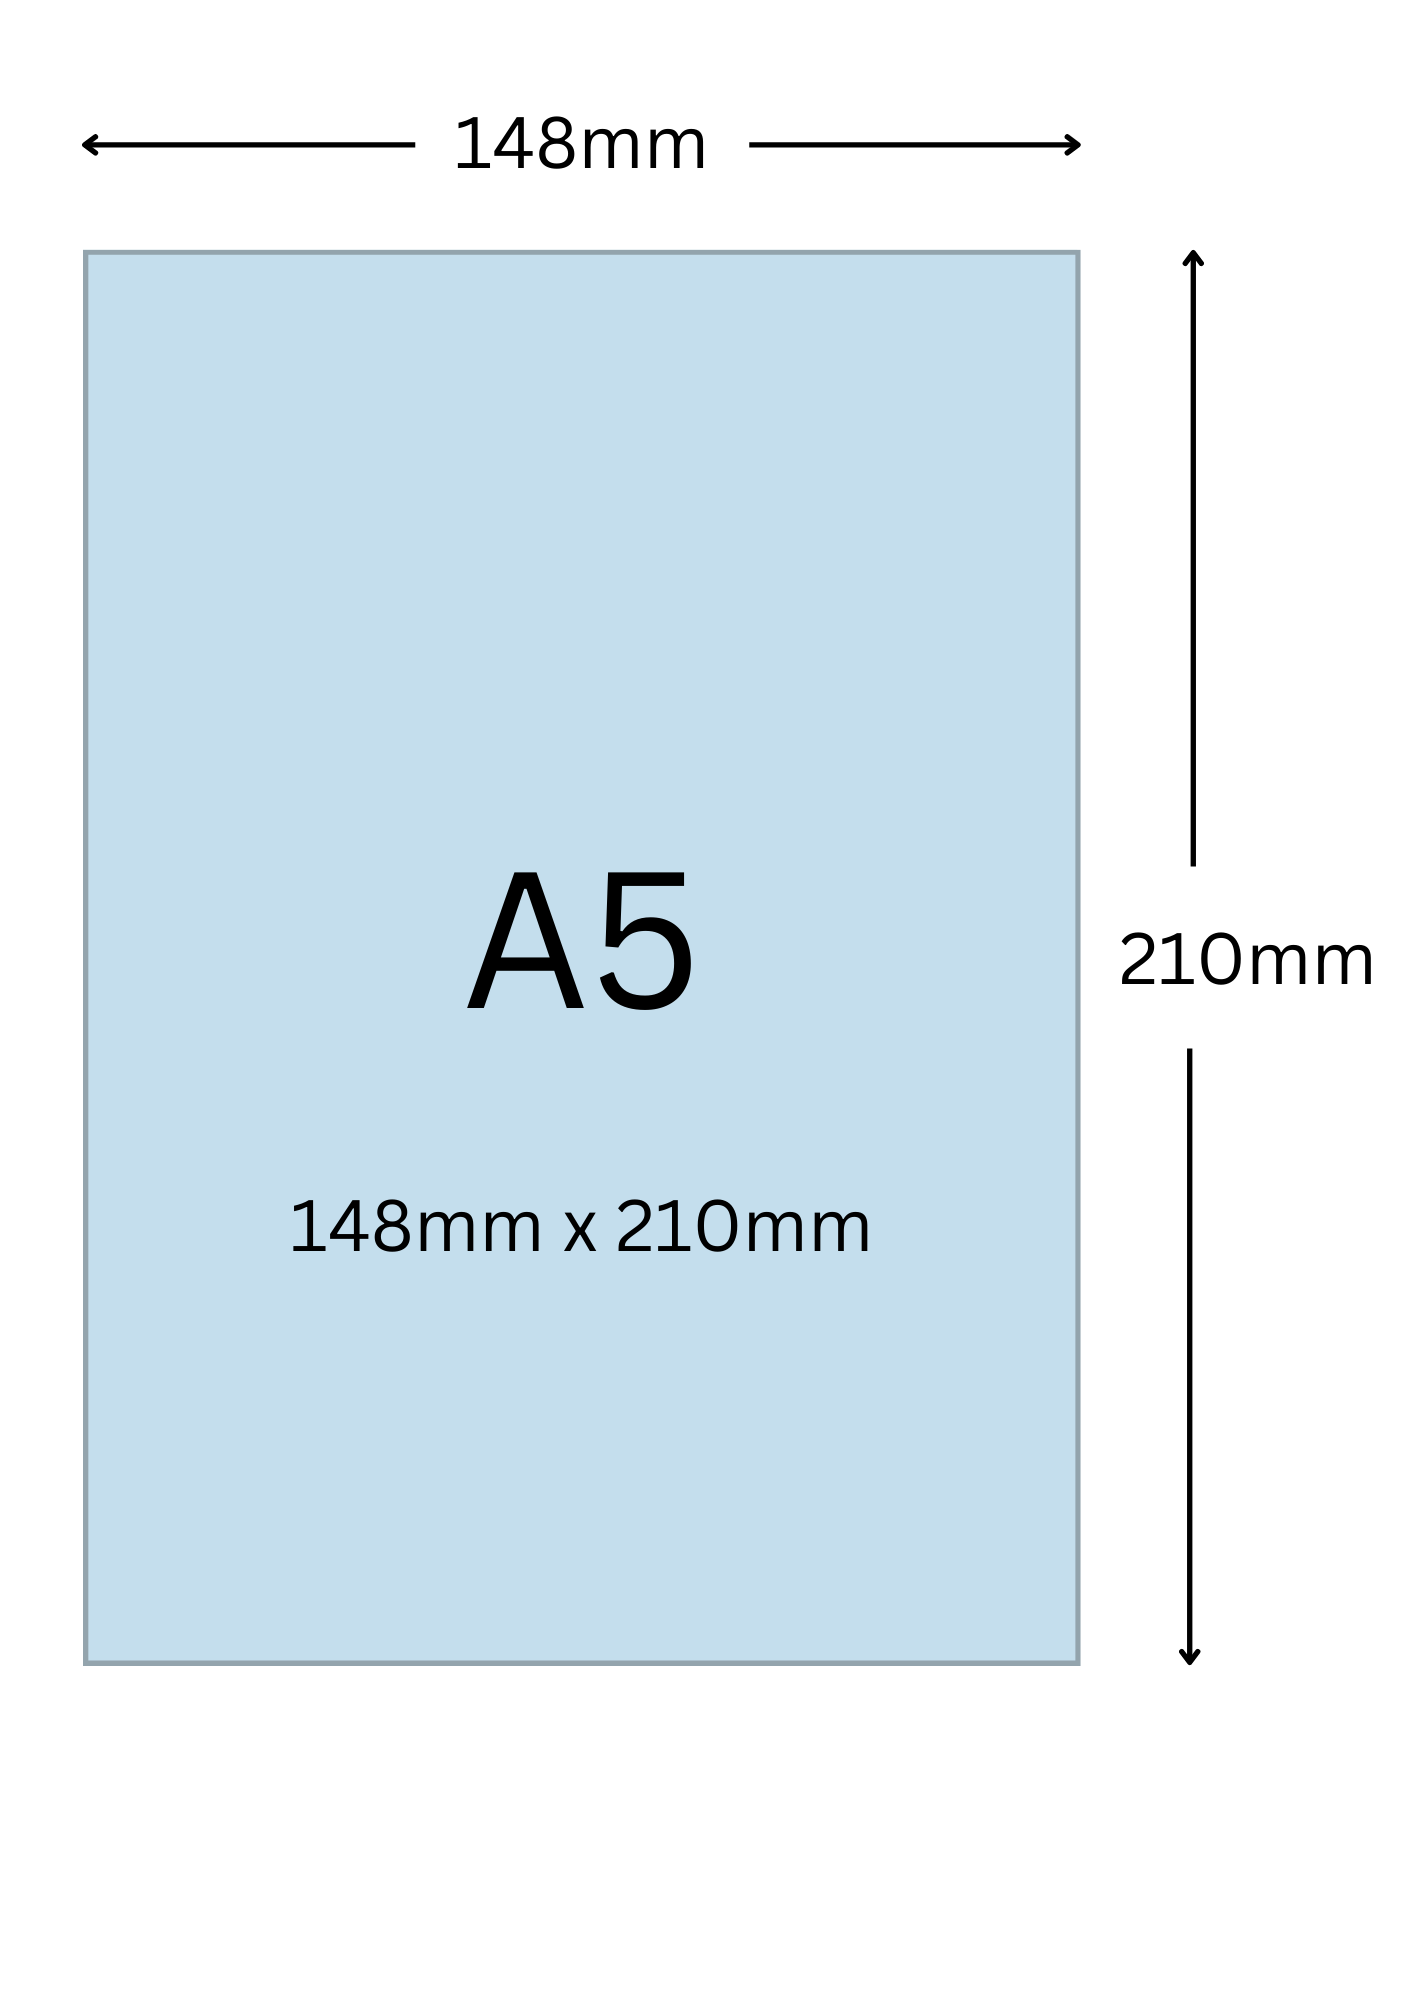 A5尺寸公分, A5紙張尺寸大小, A5紙張對應開數是幾開